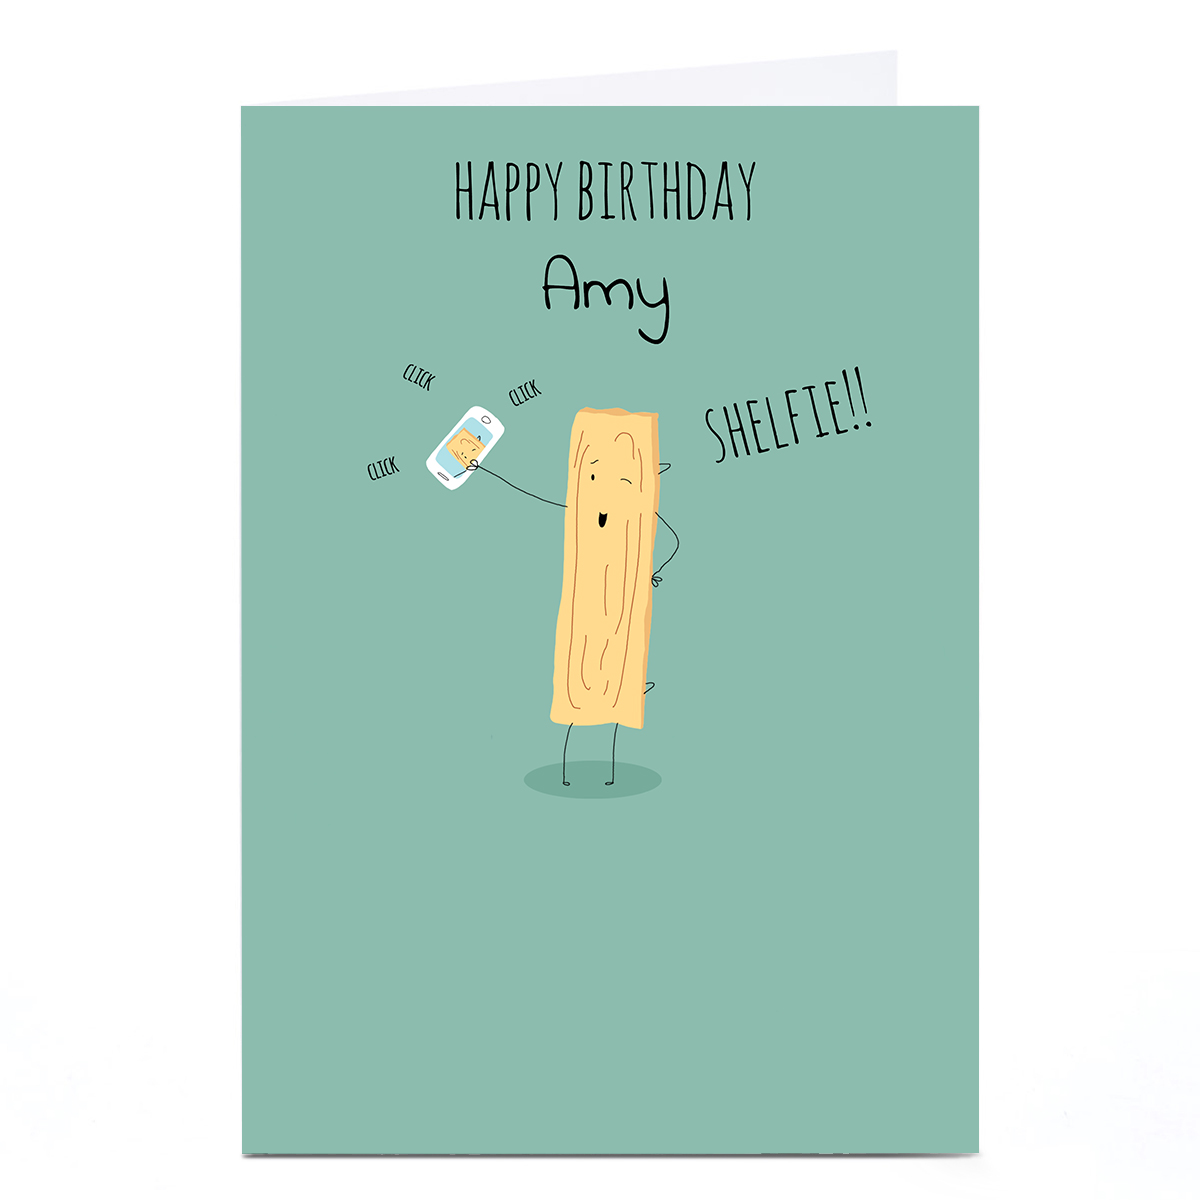 Personalised Cory Reid Birthday Card - Shelfie